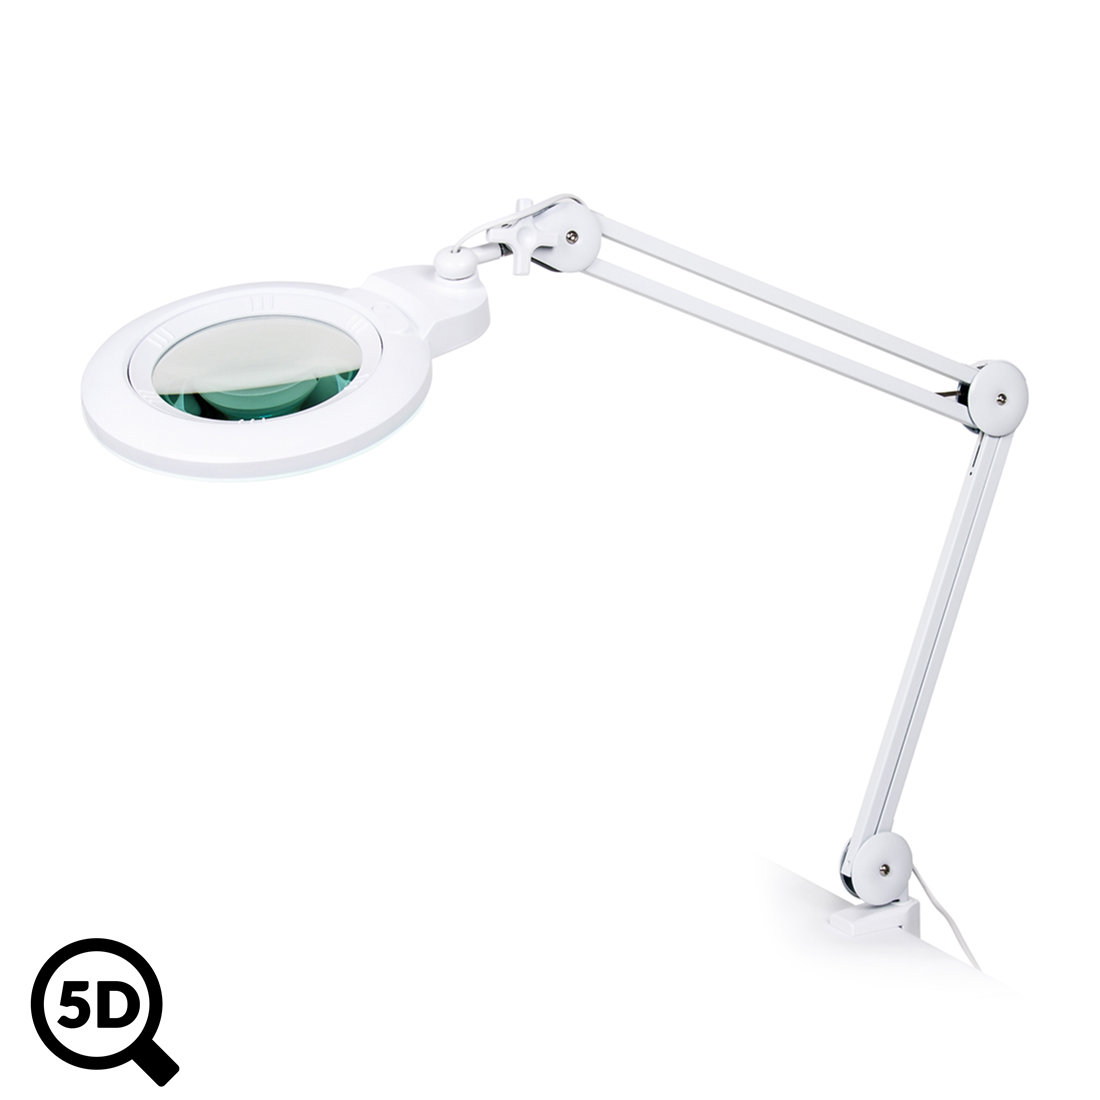 Servisní LED lampa s lupou IB-150, průměr 150mm, 5D